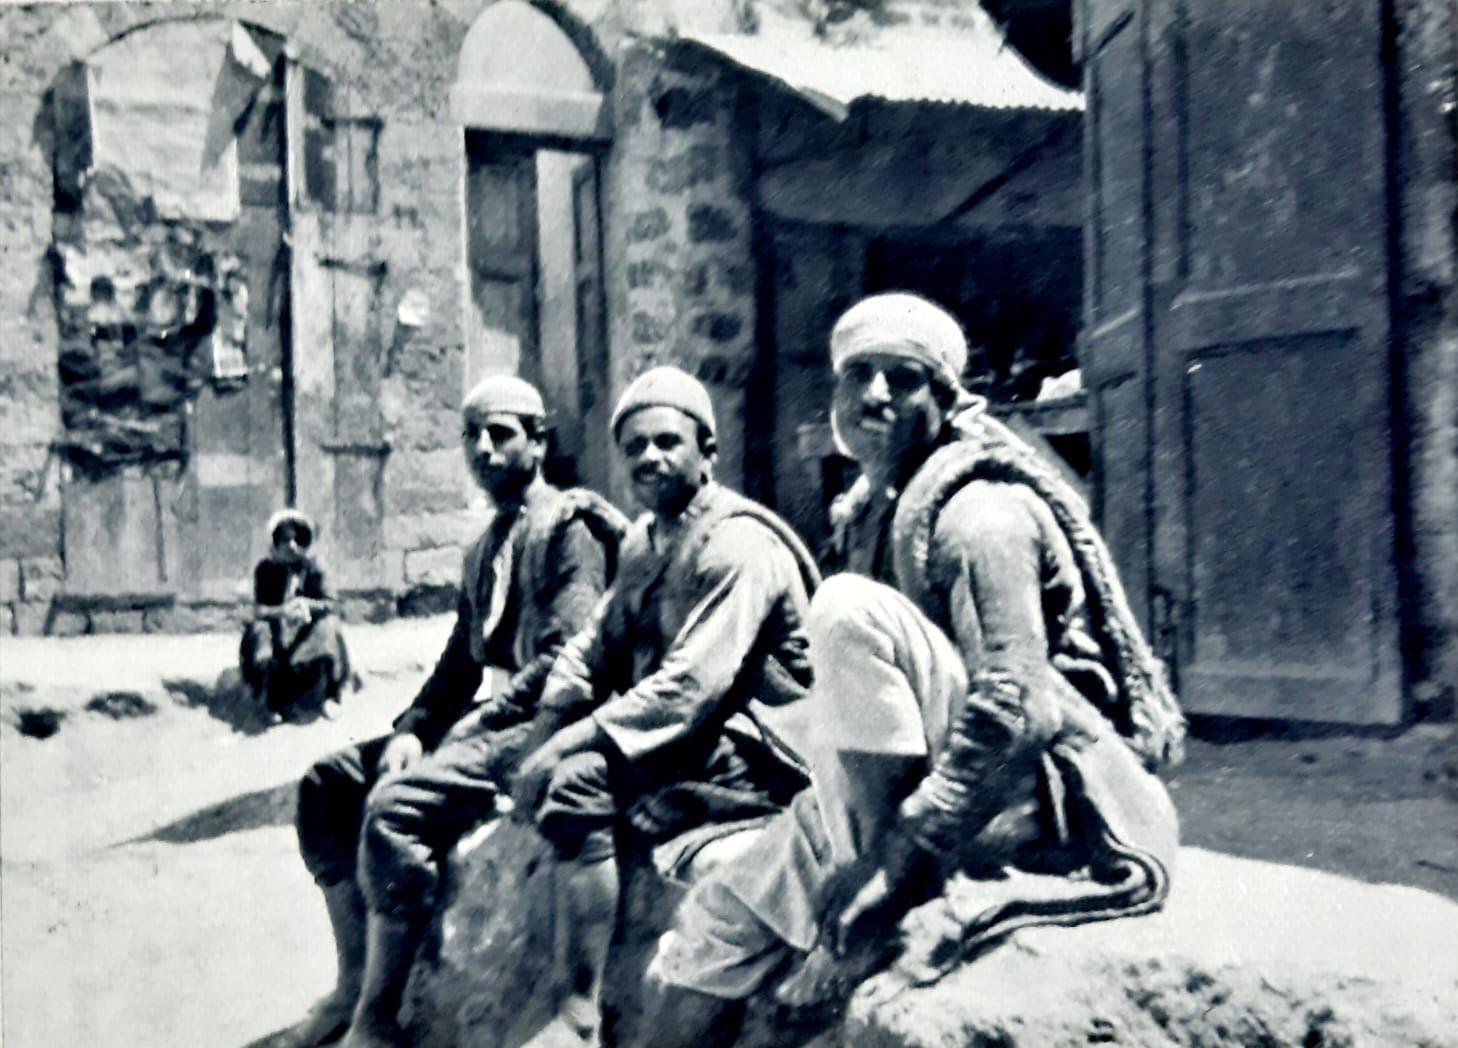 أيام نكبة| باقة من الصور النادرة لمدينة يافا قبل عام النكبة 1948 